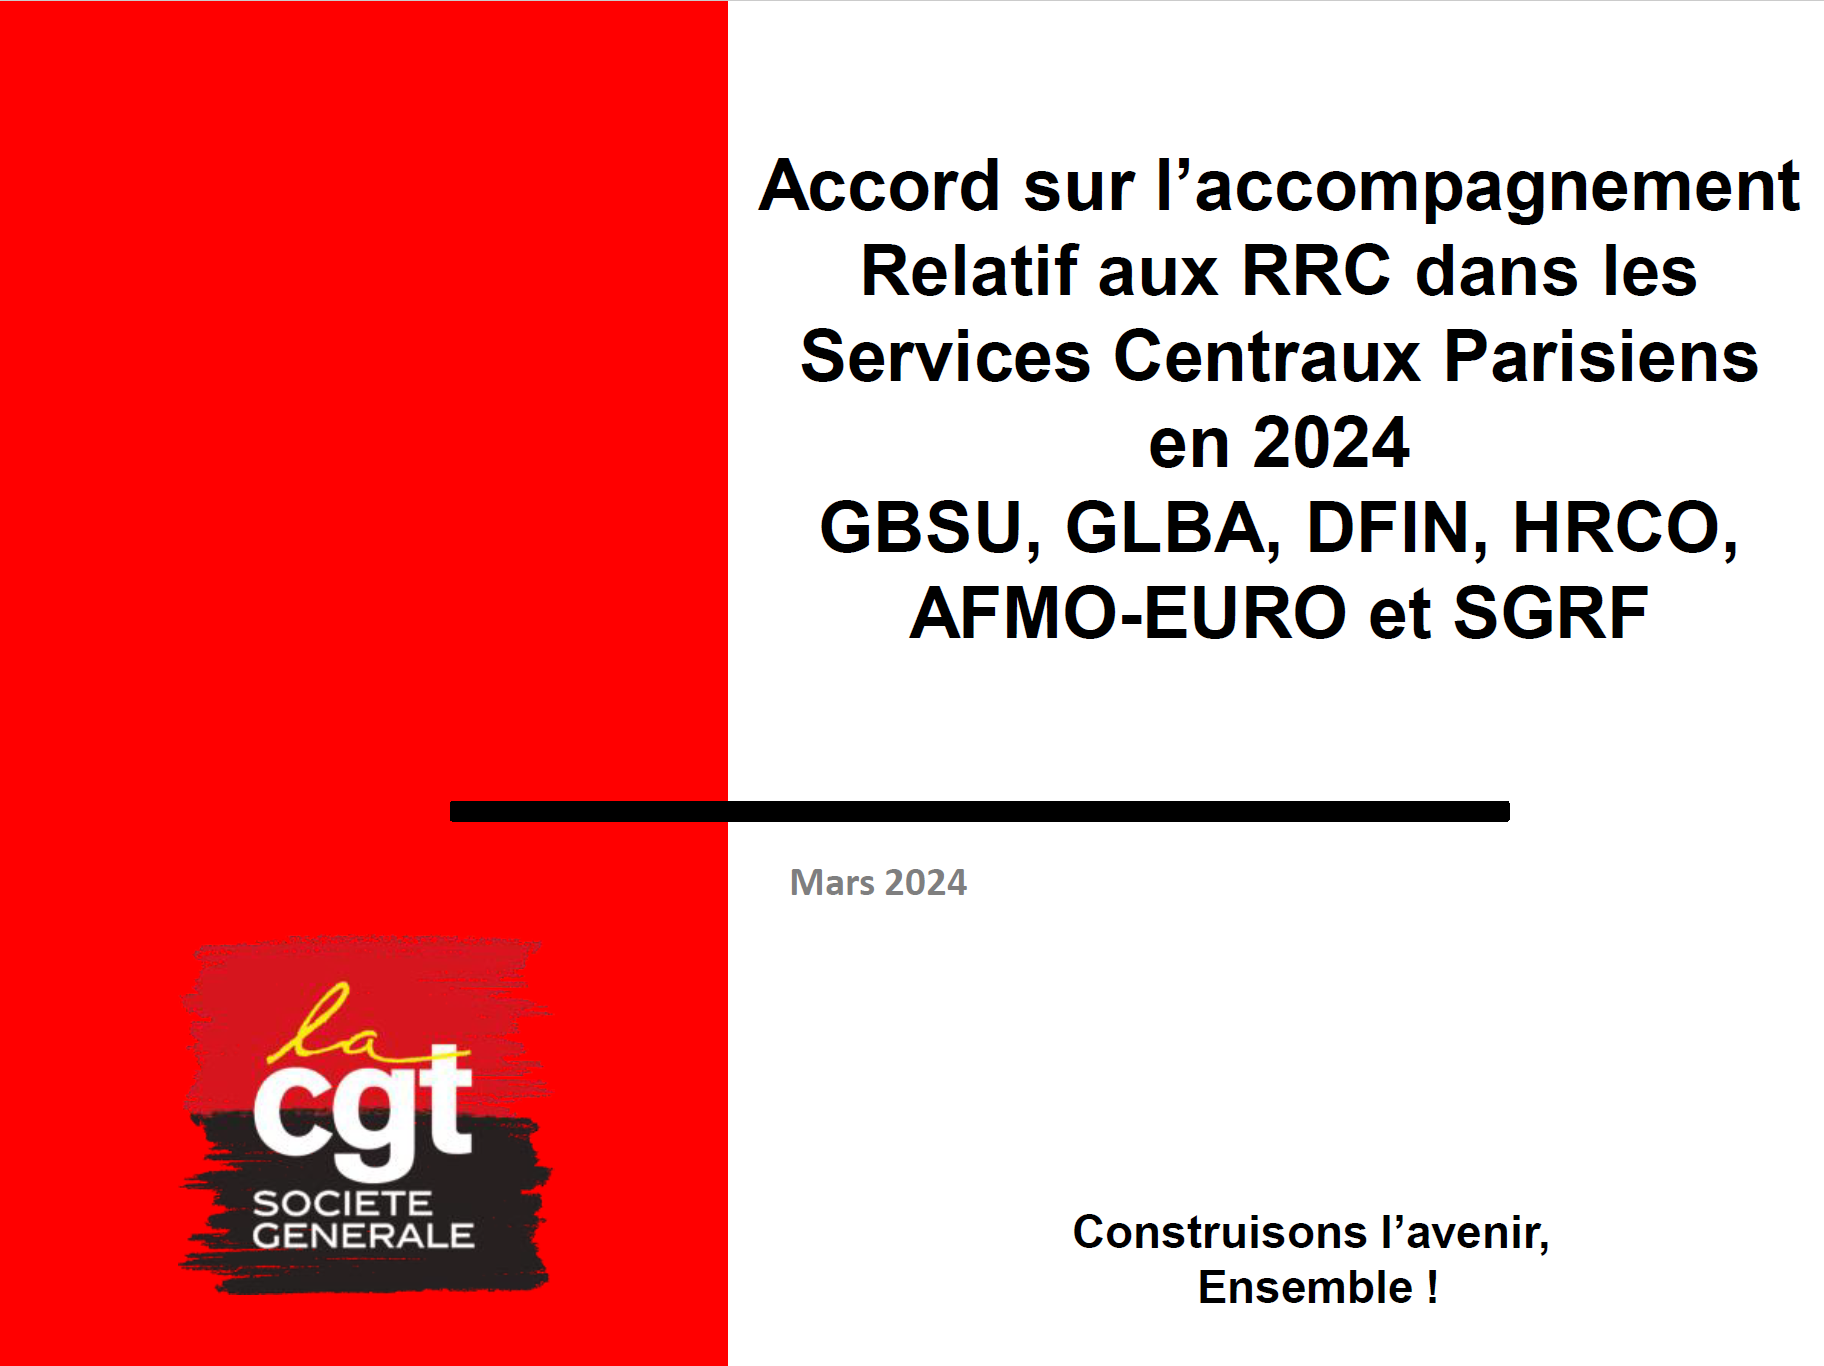 IRCC / Plan / réorganisations 2024 - 27 mars 2024 : Le guide suprême (du plan 2024)